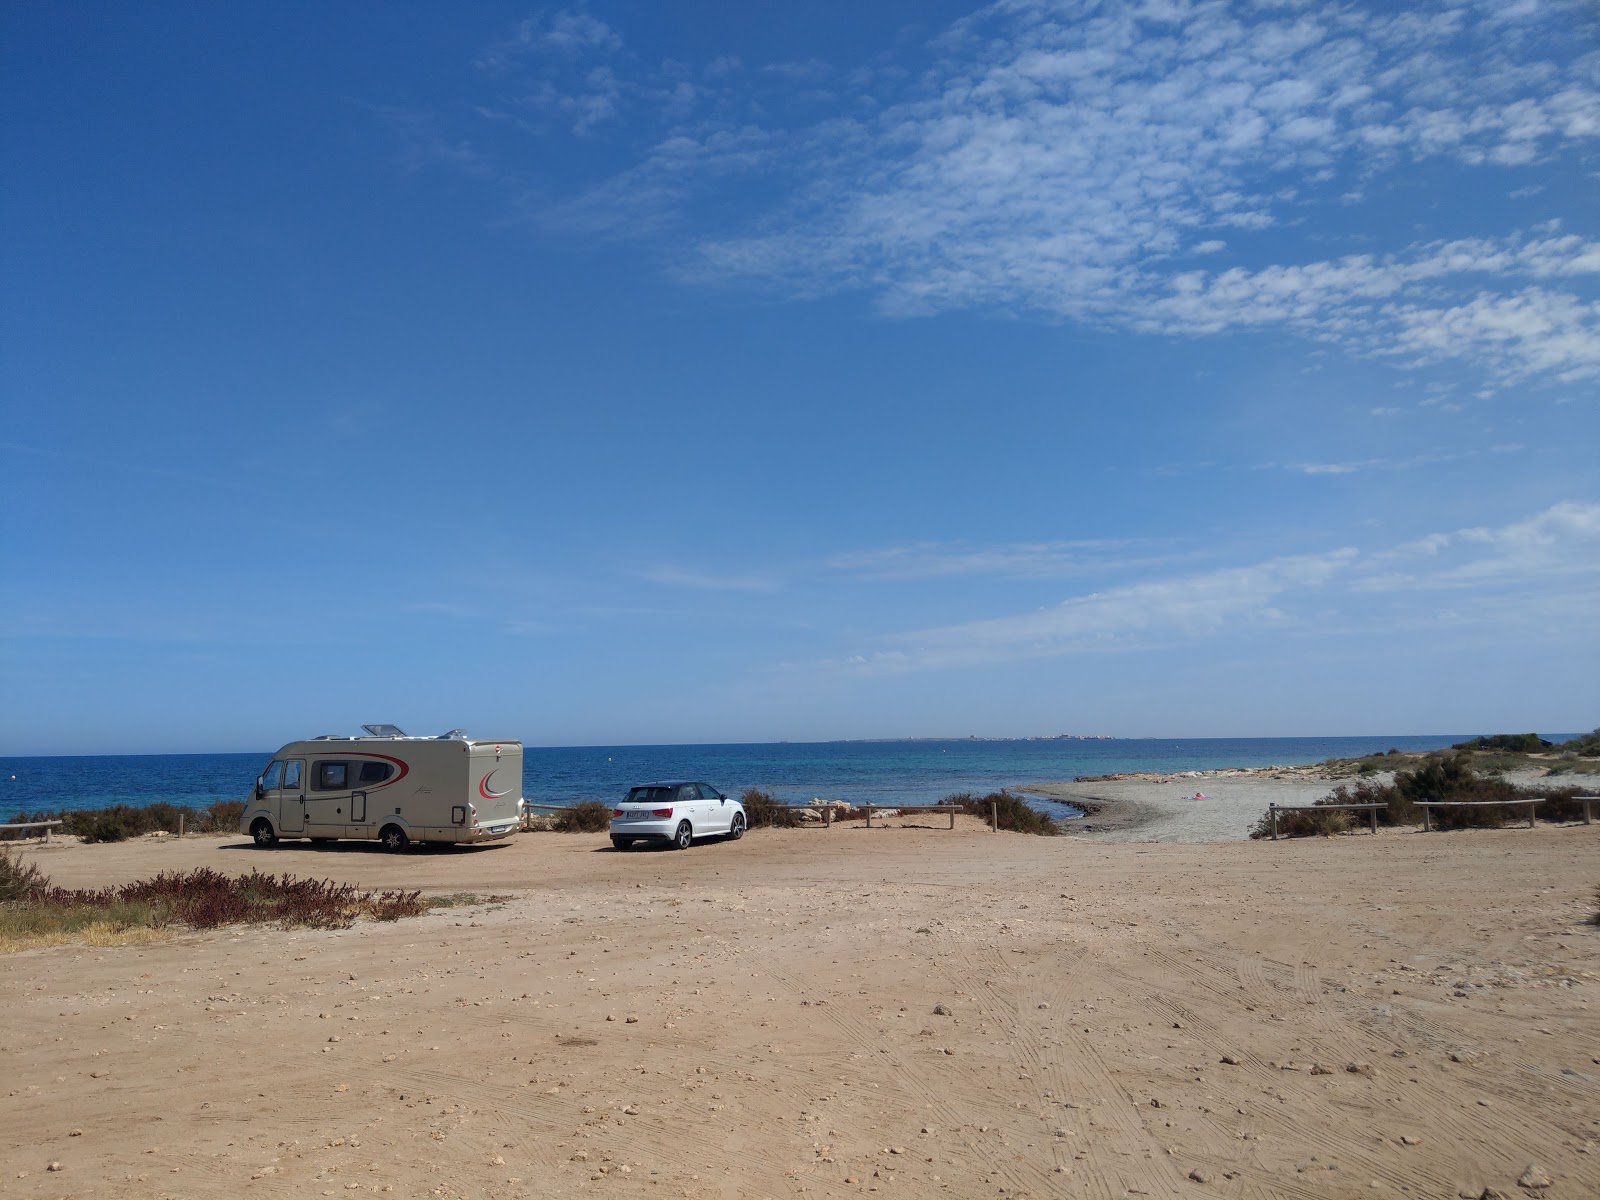 Santa Pola dog beach'in fotoğrafı doğrudan plaj ile birlikte